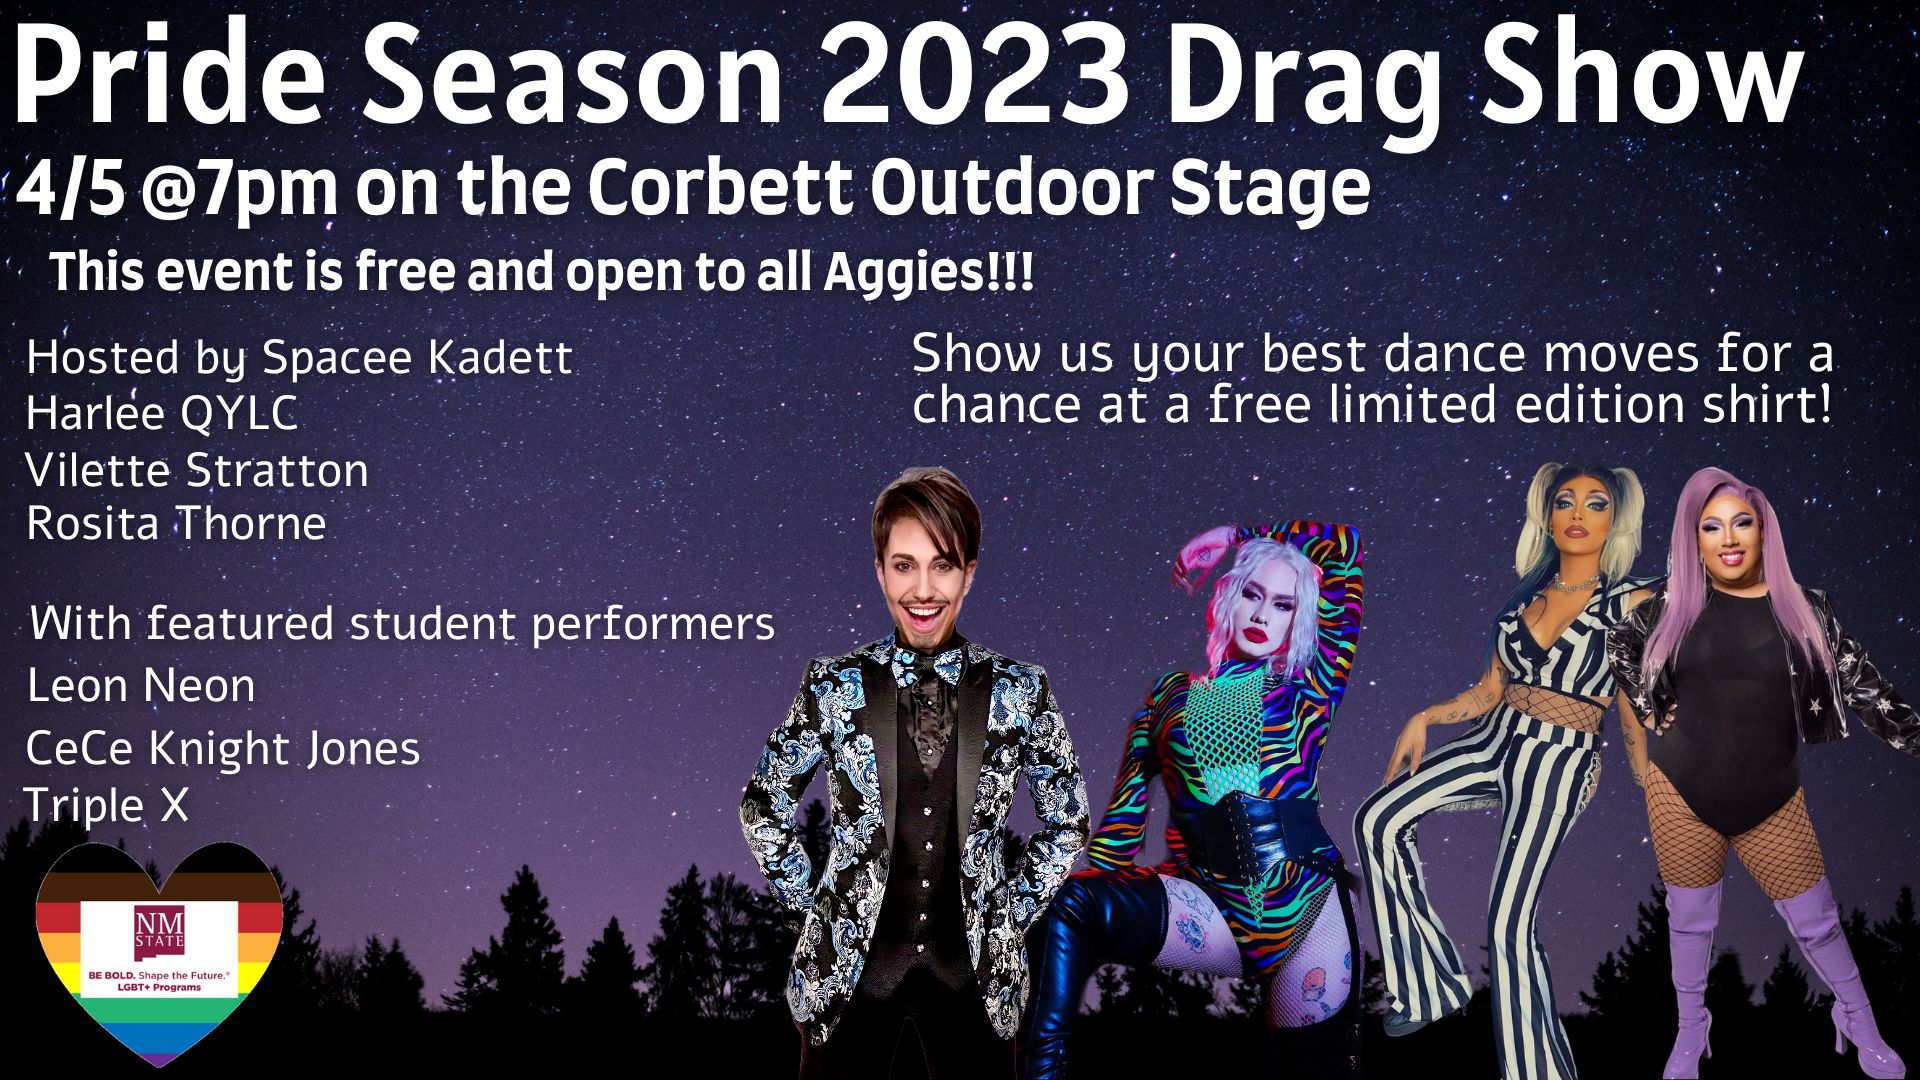 Pride Season Drag Show 2023